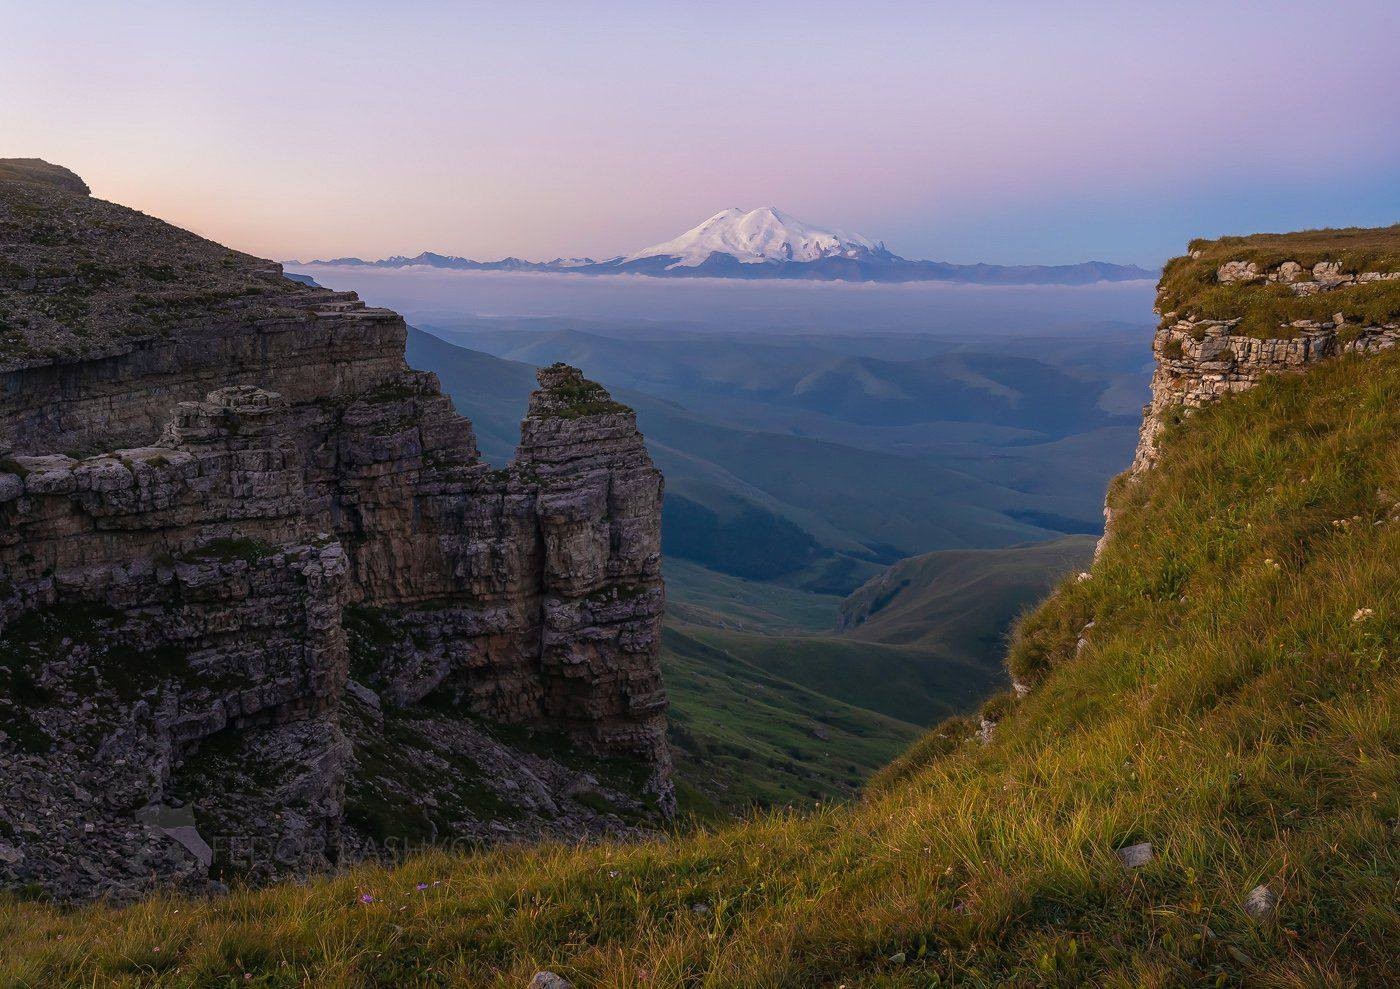 Эльбрус на рассвете, вид с плато Бермамыт. Фотограф Фёдор Лашков